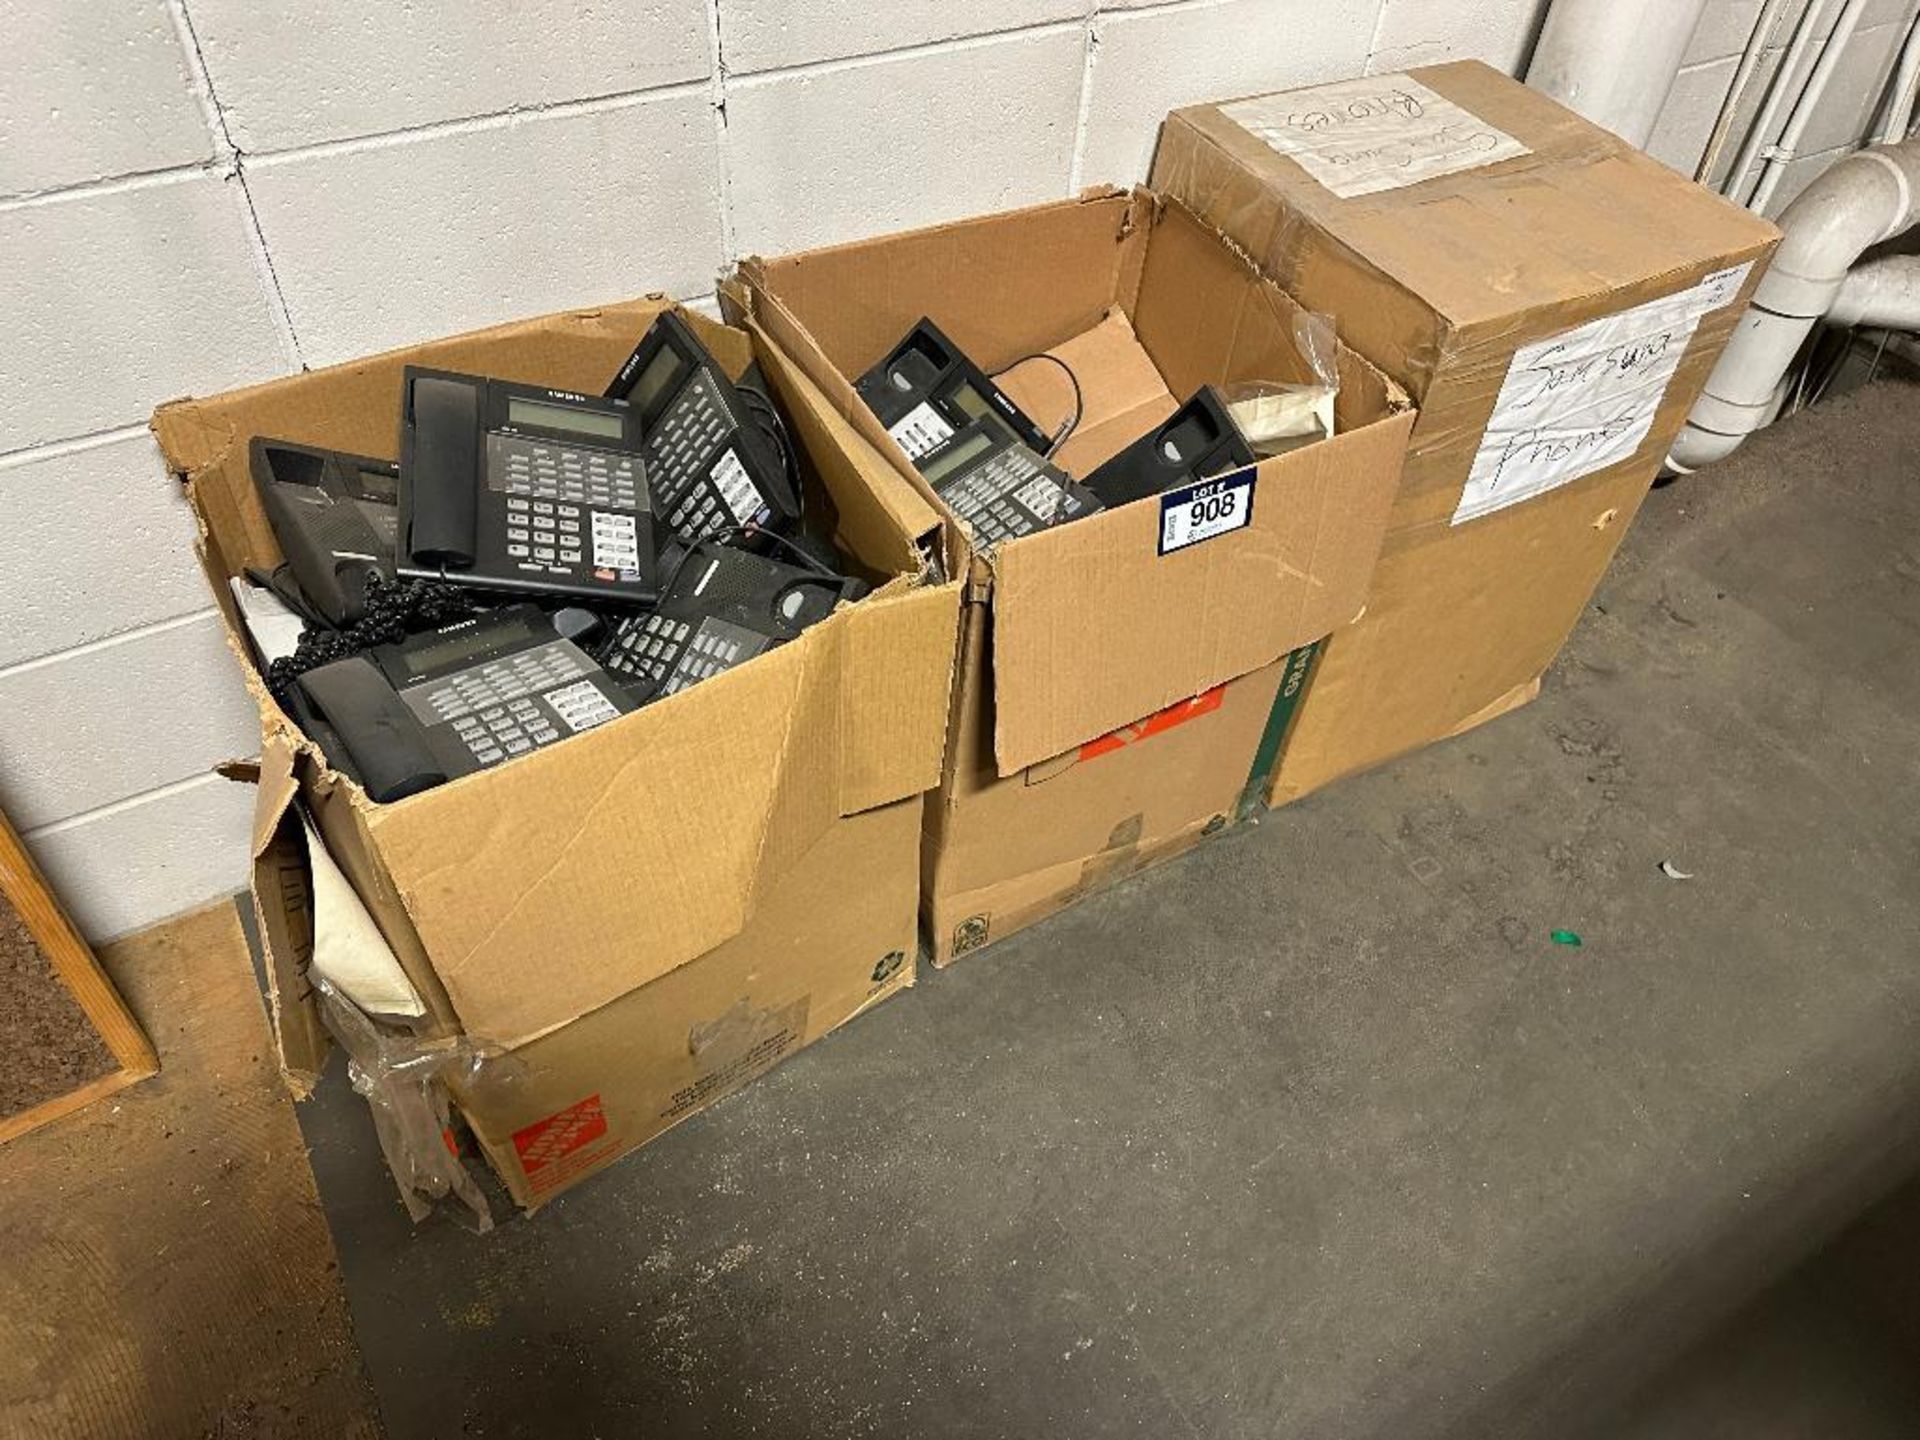 Lot of (3) Boxes of Asst. Landline Phones